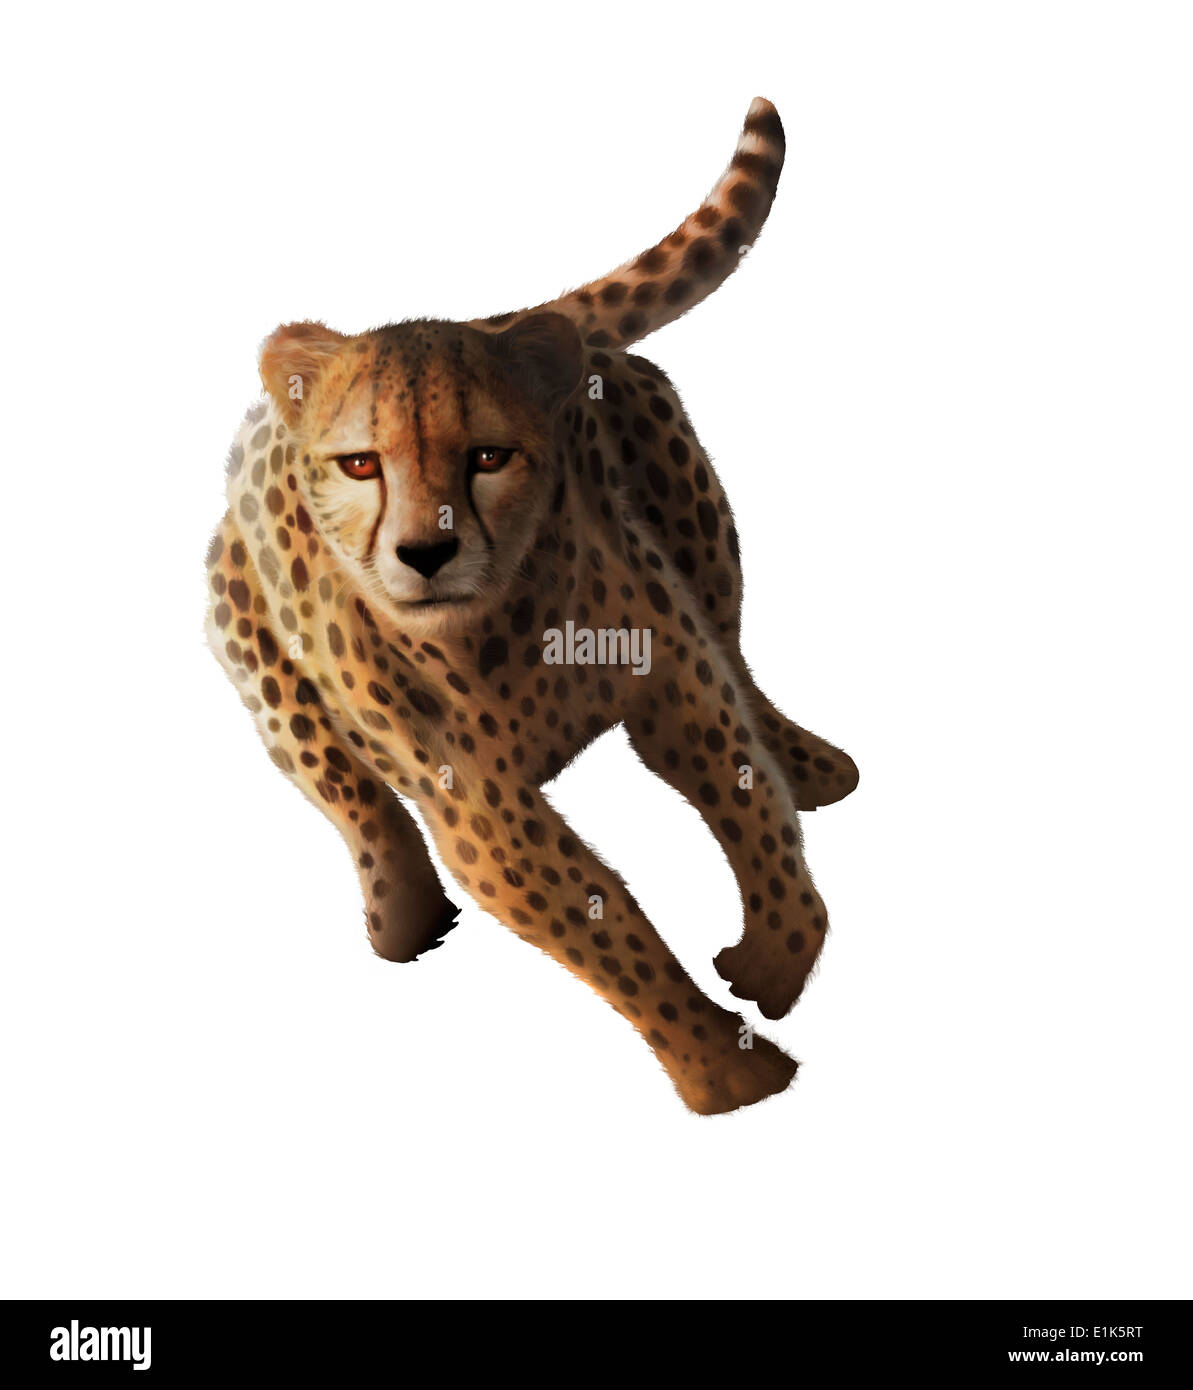 Ilustración de un esprint guepardo (Acinonyx jubatus) guepardos cazan herbívoros como las gacelas y cebras arrastrándose dentro de unos pocos Foto de stock